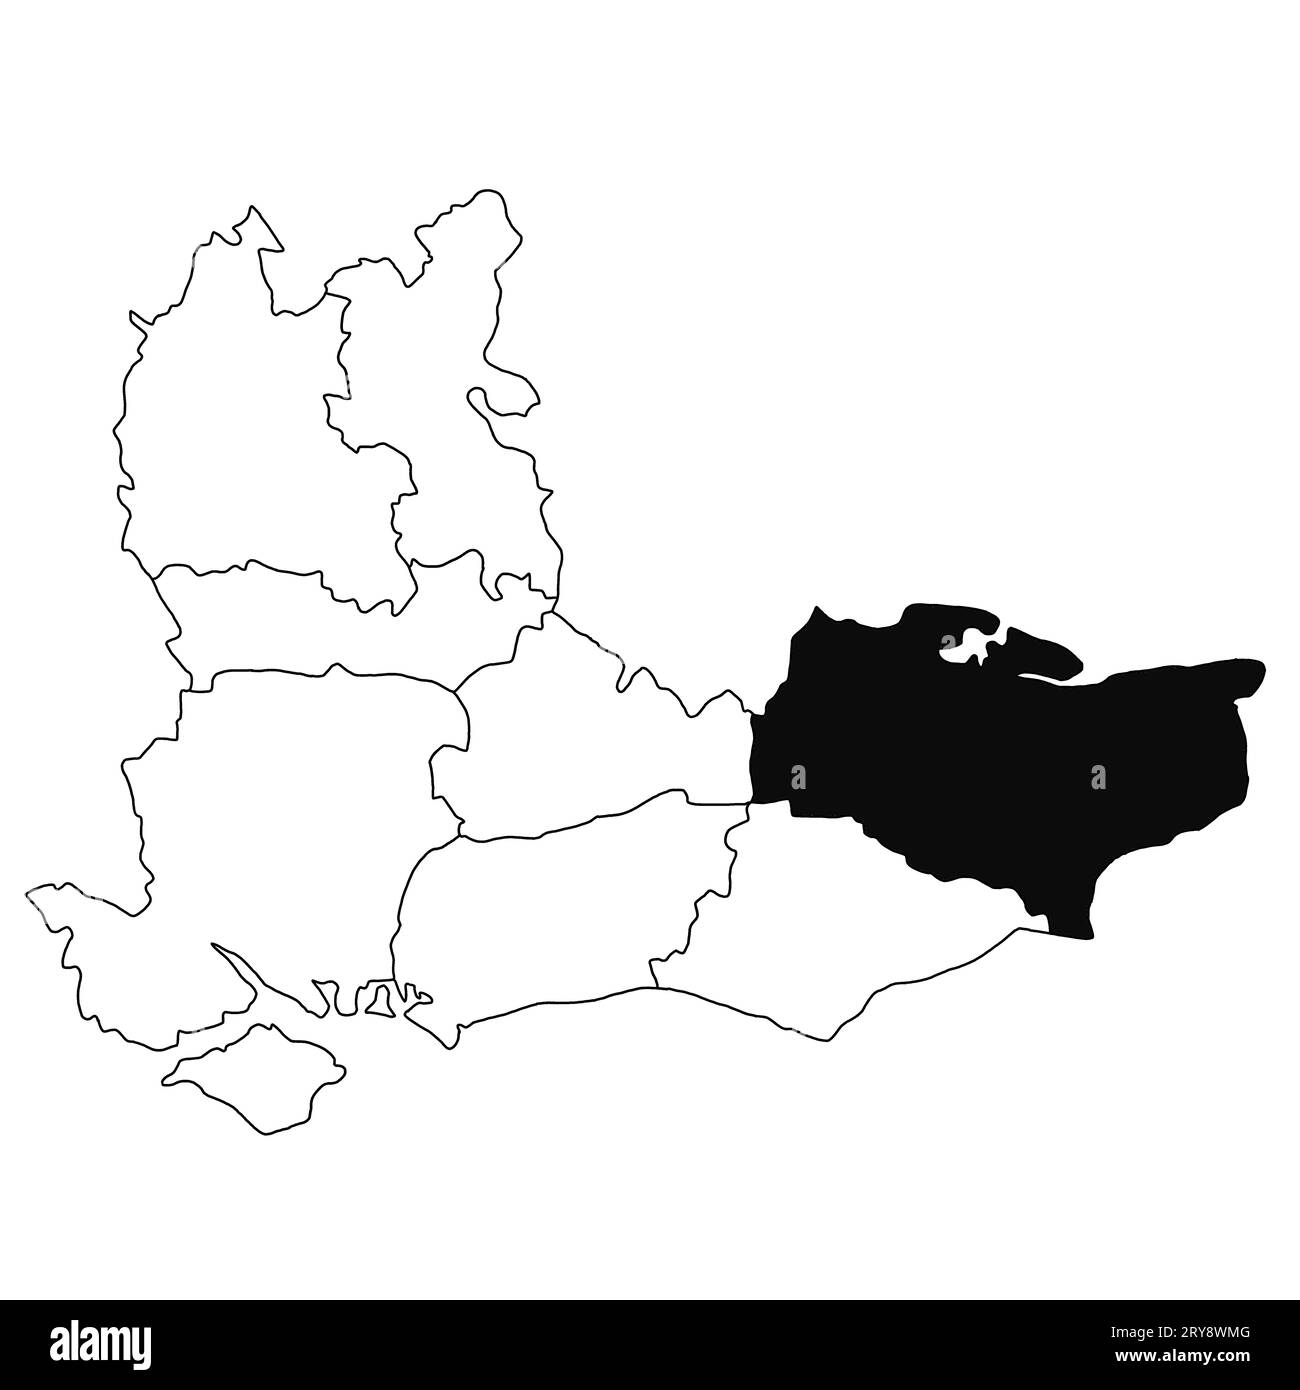 Mappa del Kent nella provincia del sud-est dell'Inghilterra su sfondo bianco. Mappa singola della contea evidenziata da colore nero sulla mappa amministrativa del sud-est dell'Inghilterra Foto Stock